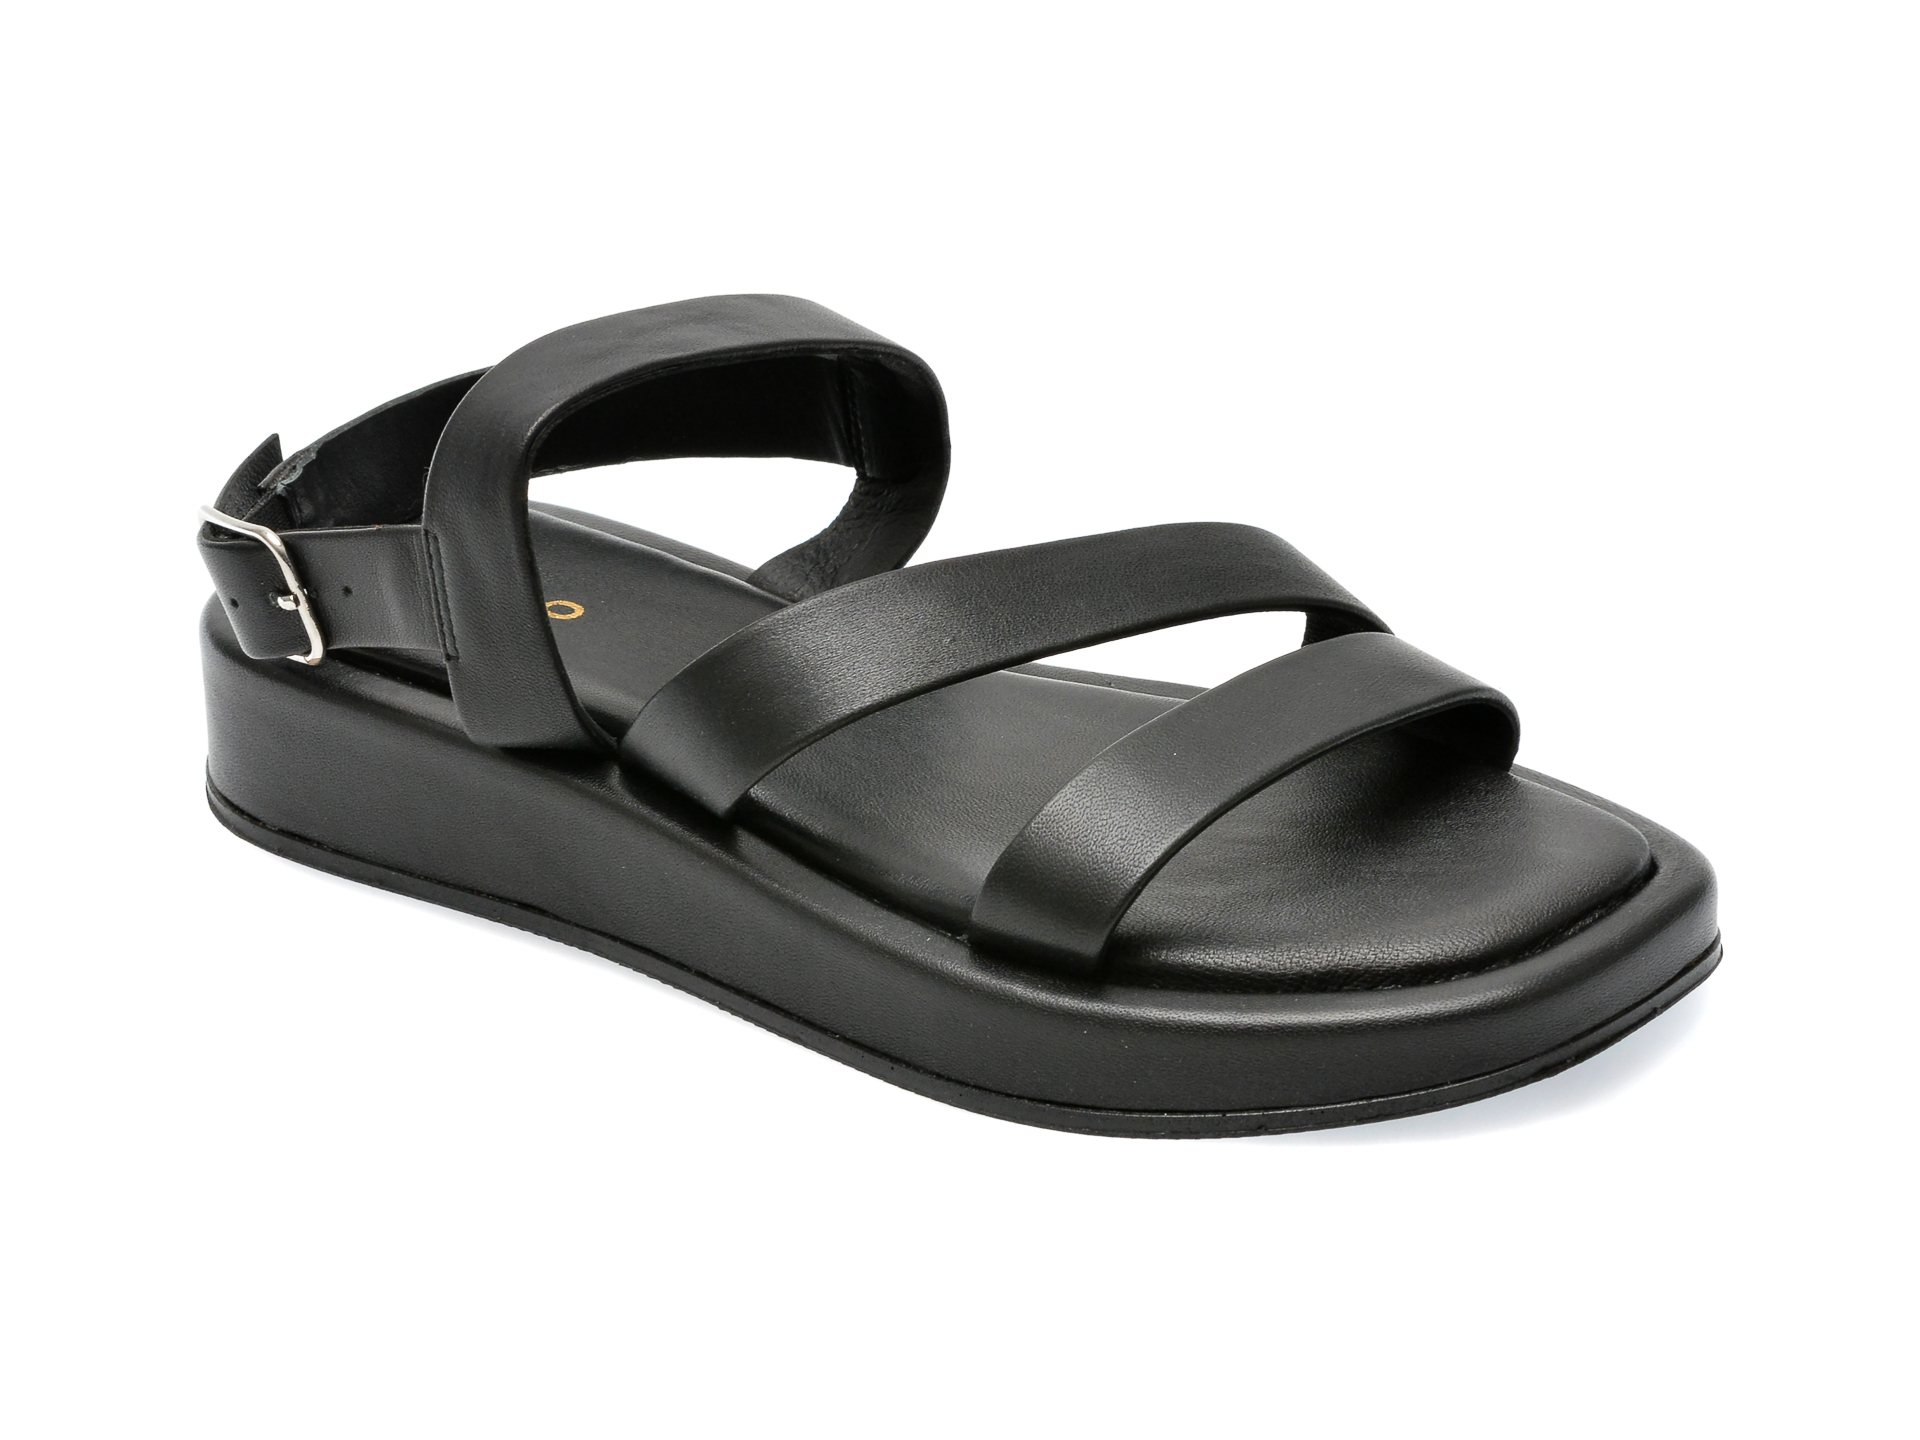 Sandale ALDO negre, RIMSKY001, din piele naturala femei 2023-09-23